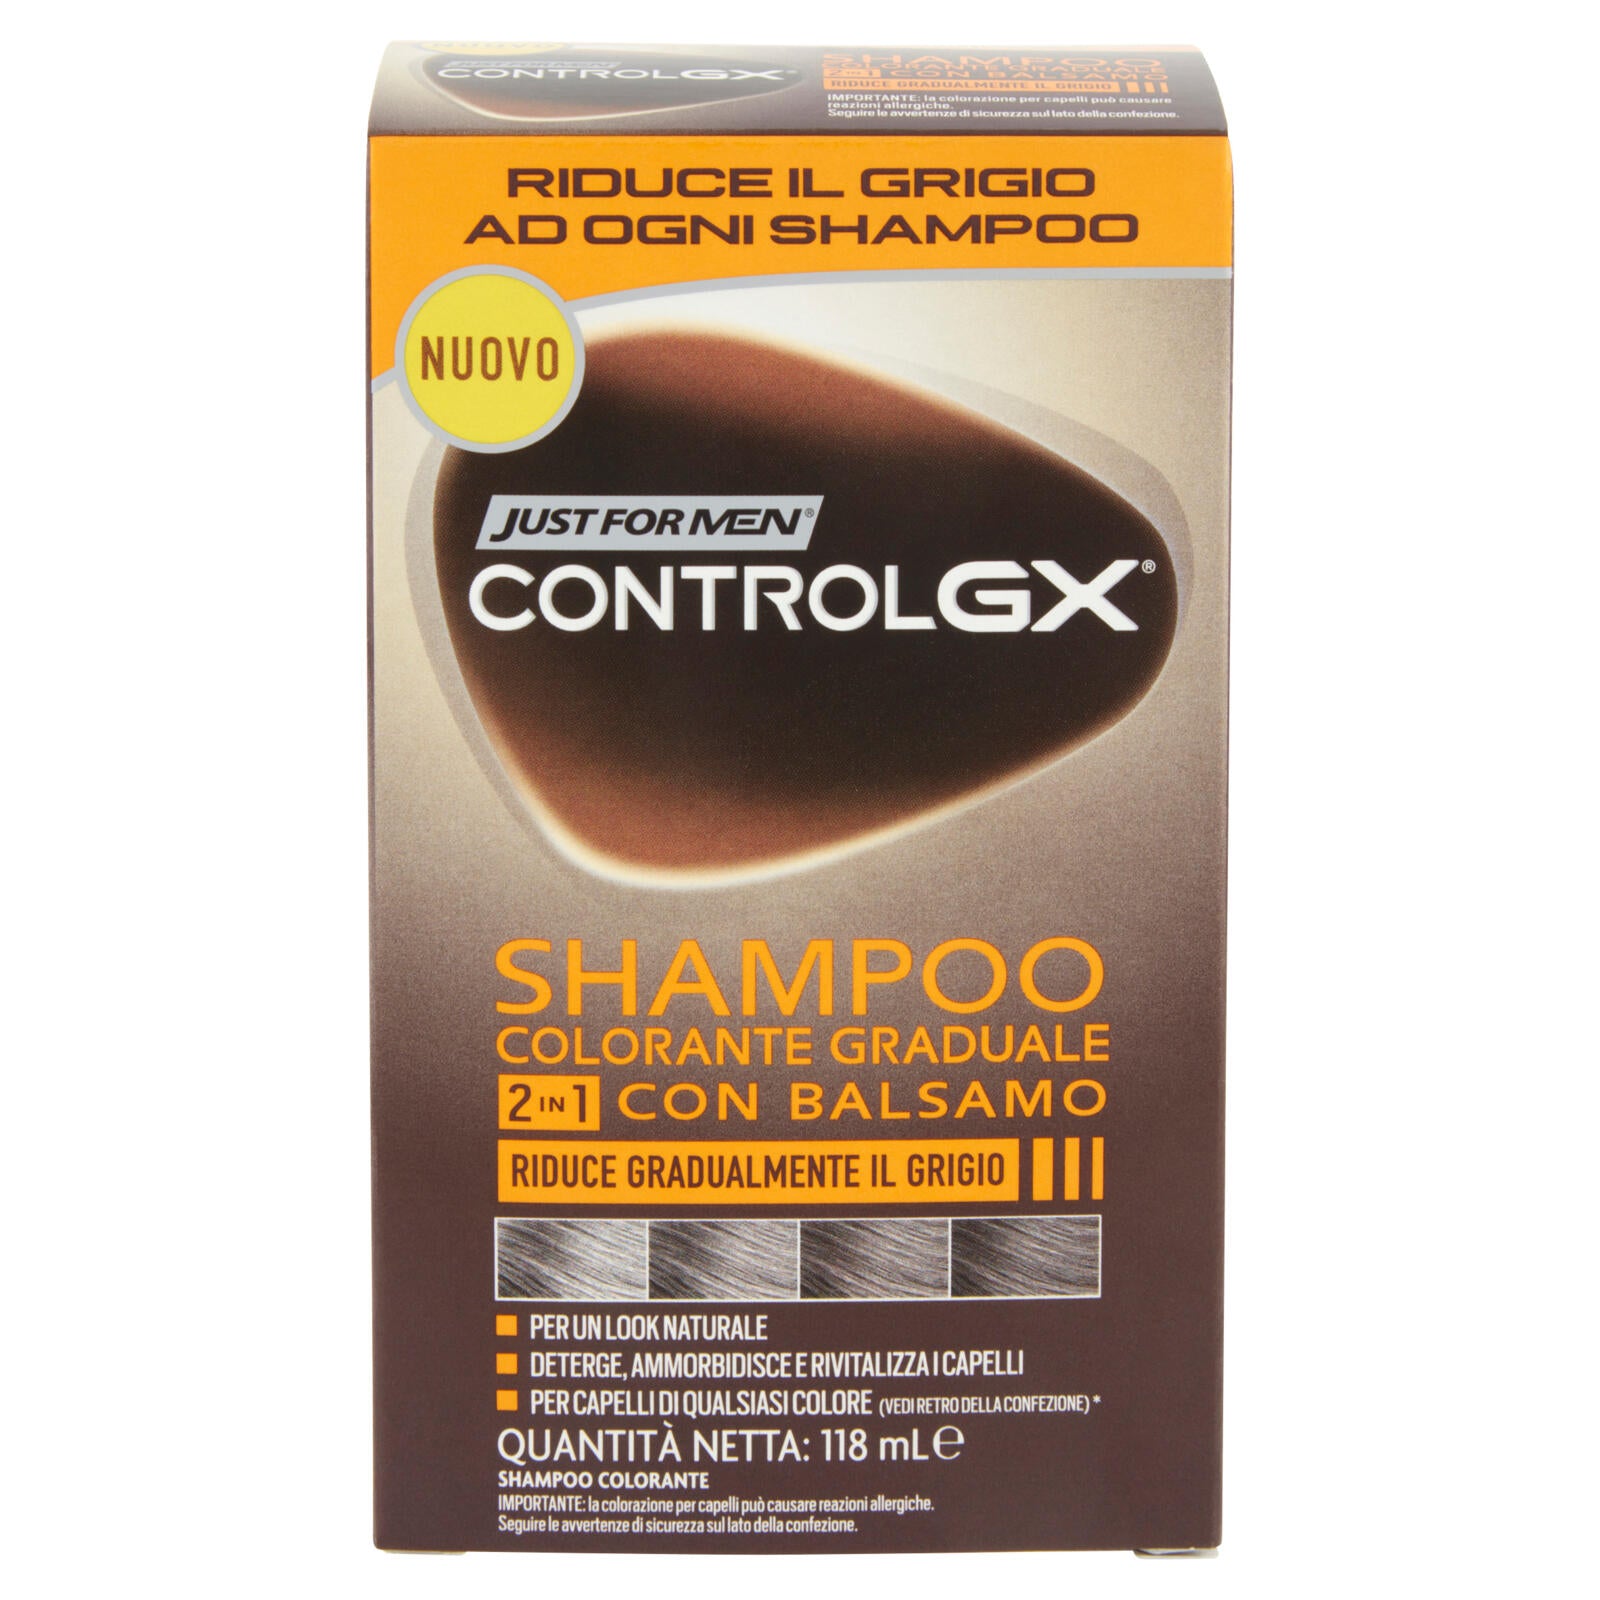 Just For Men Control GX Shampoo Colorante Graduale 2in1 con Balsamo 118 mL  ->